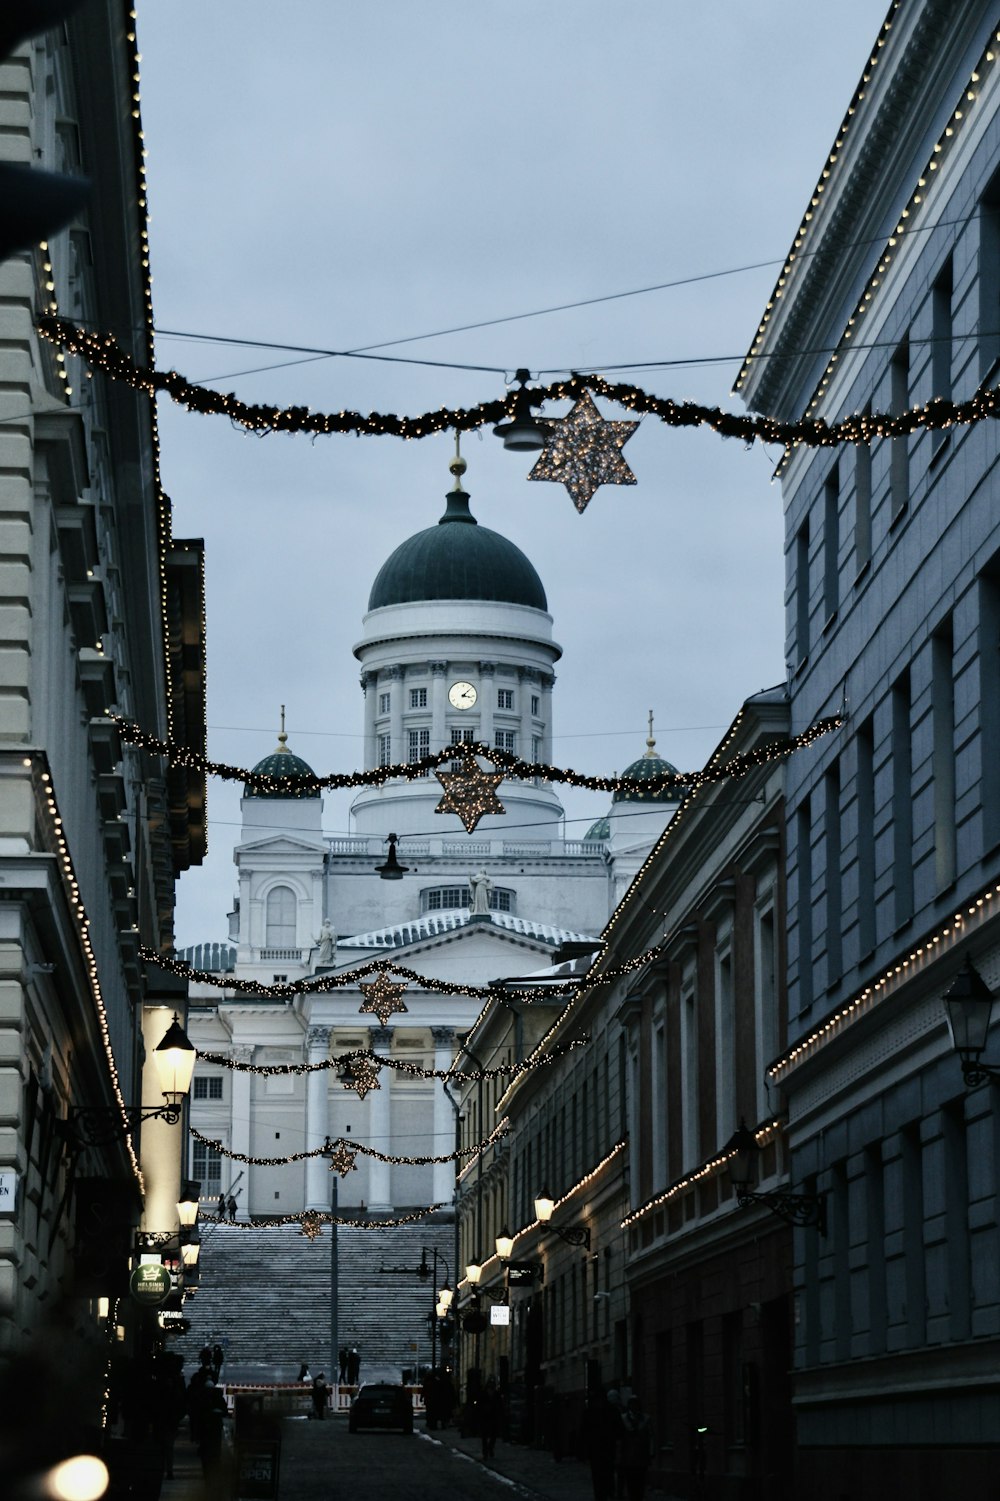 Una calle de la ciudad con edificios y una cúpula al fondo